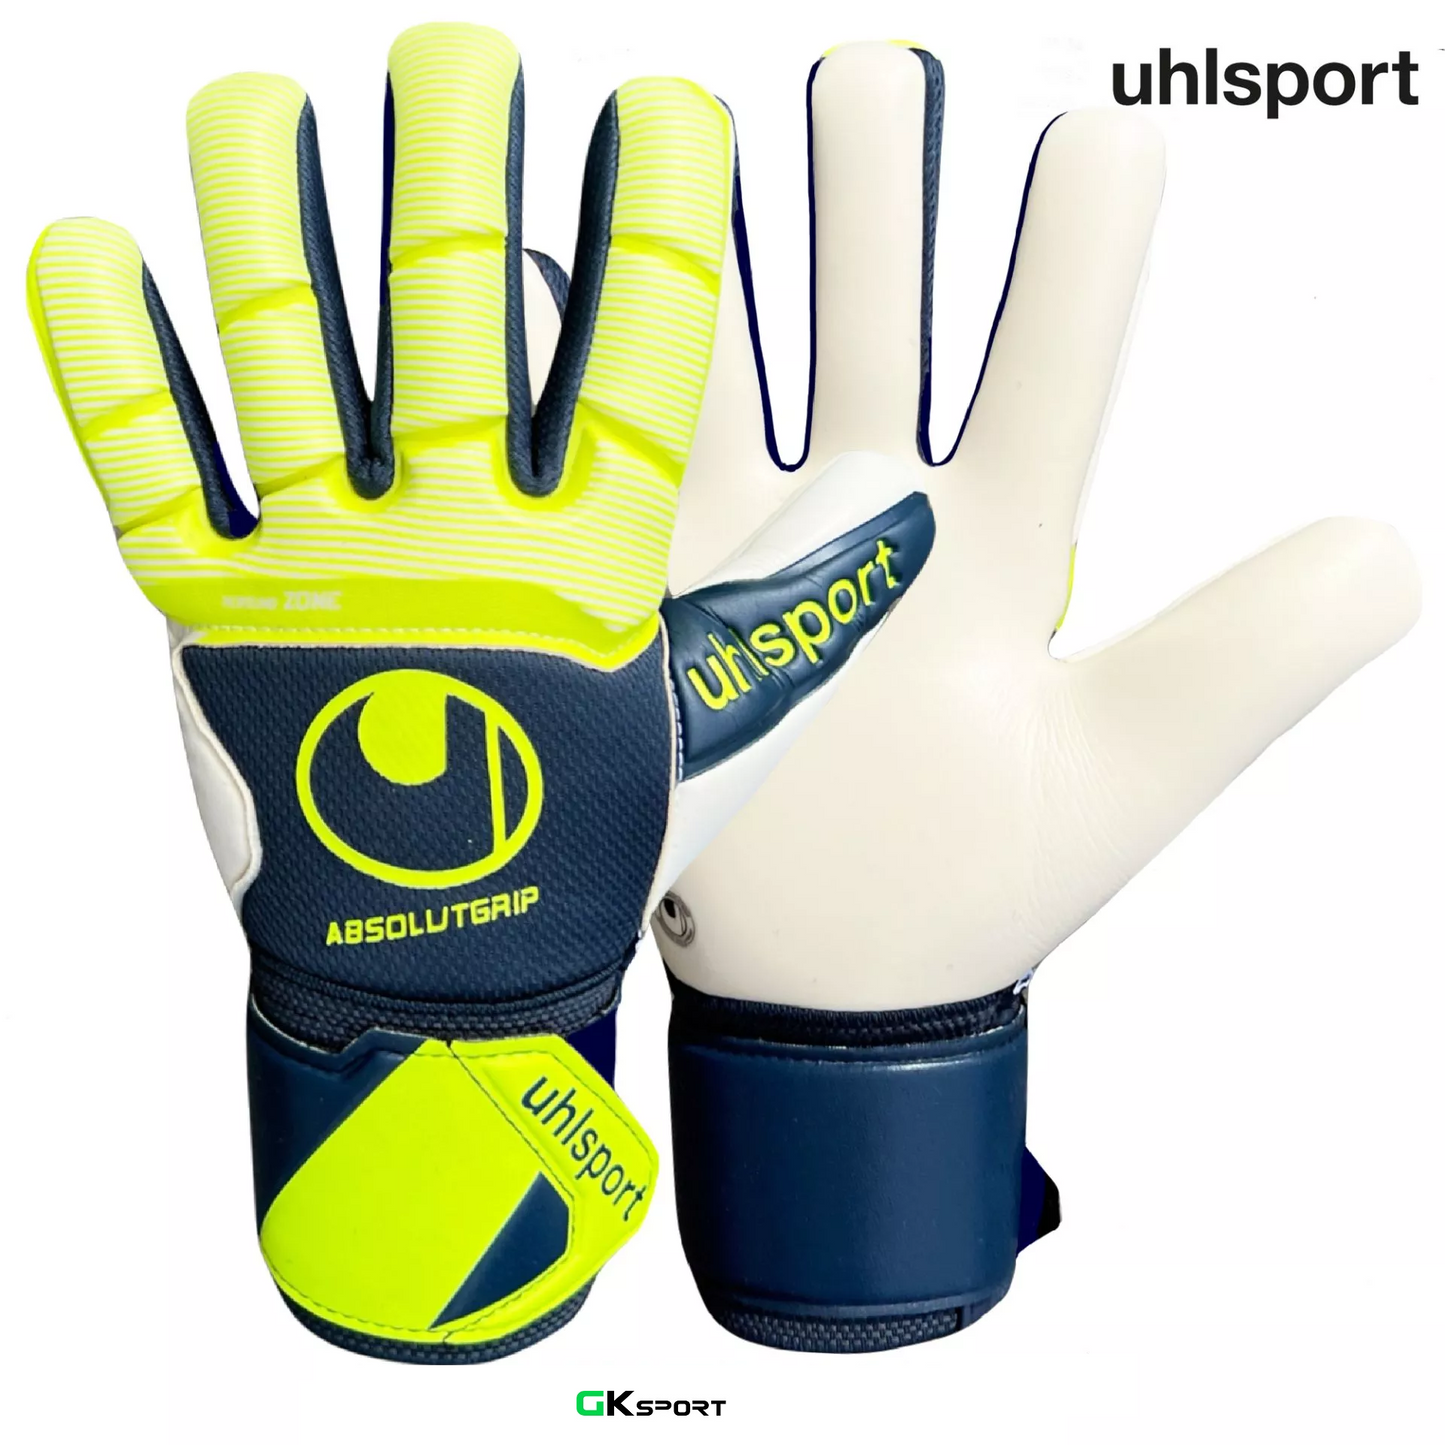 UHLSPORT ABSOLUTGRIP HN PRO Goalkeeper gloves